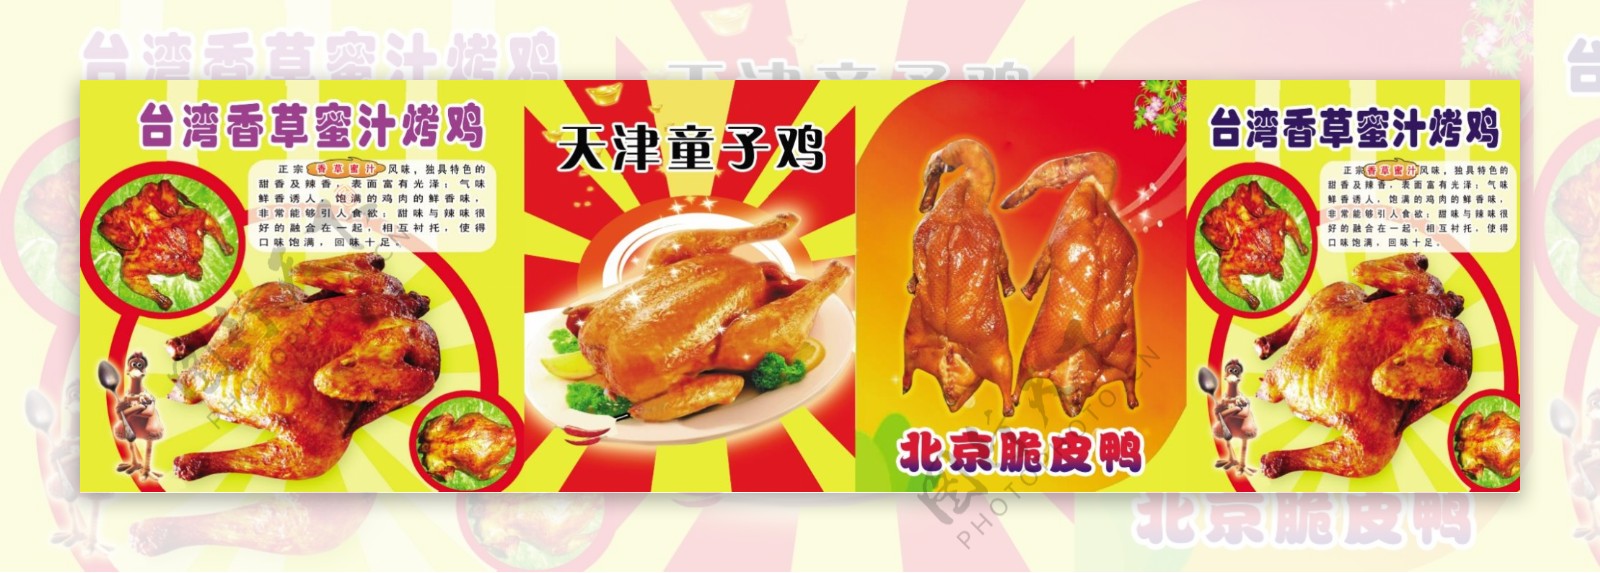 香草蜜汁烤鸡图片